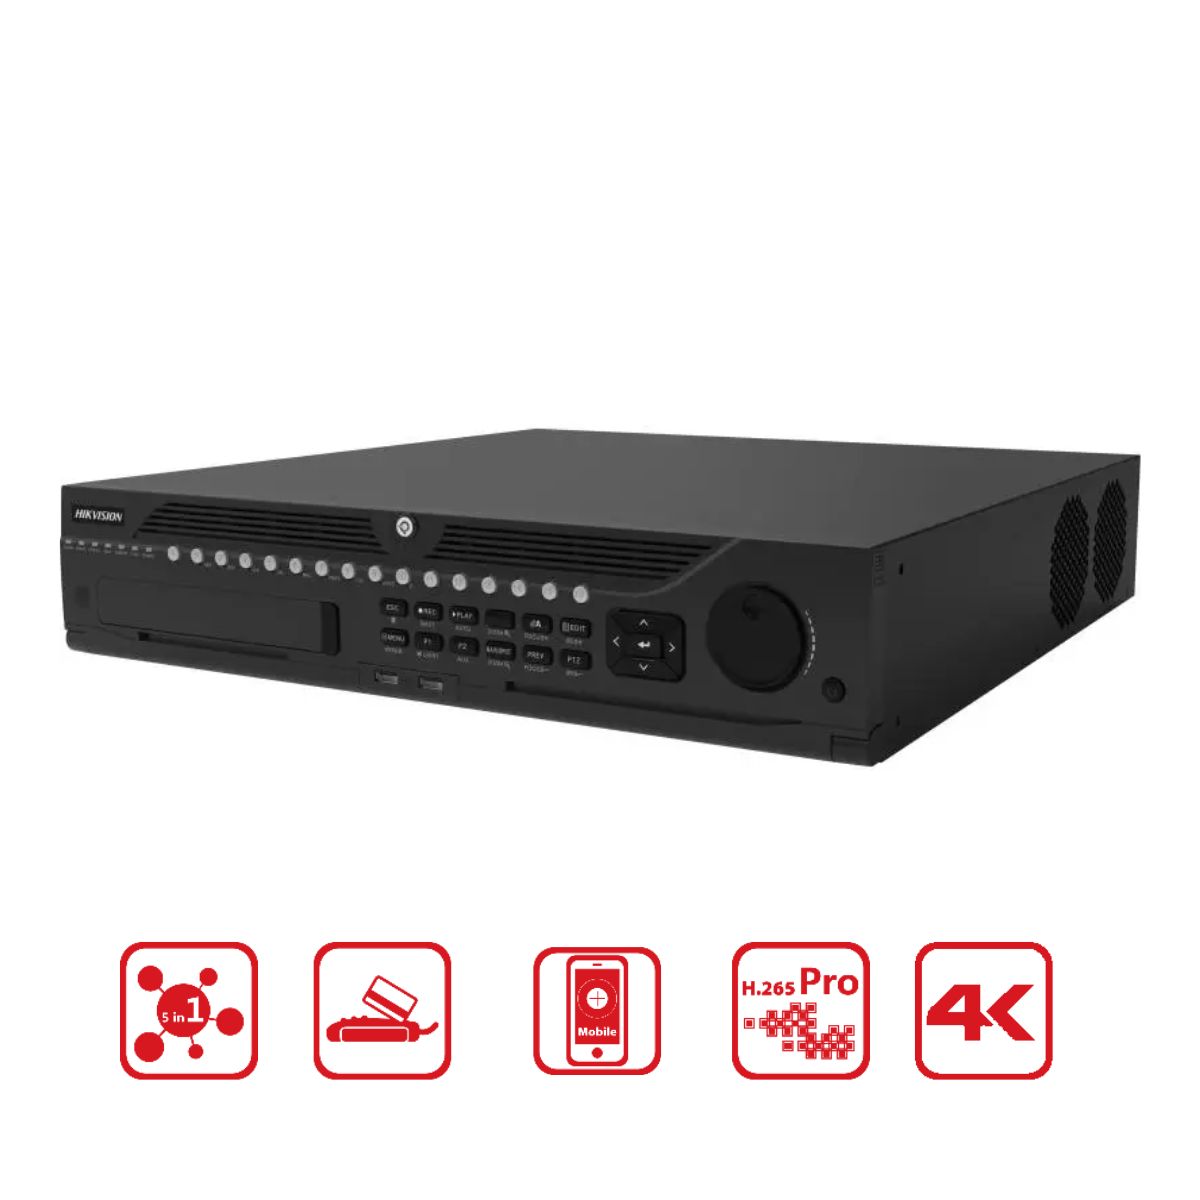 Đầu ghi 32 kênh Hybrid TVI-IP 5mp chống báo động giả Hikvision iDS-9032HUHI-M8/S hỗ trợ 8 khe cắm ổ cứng 10TB